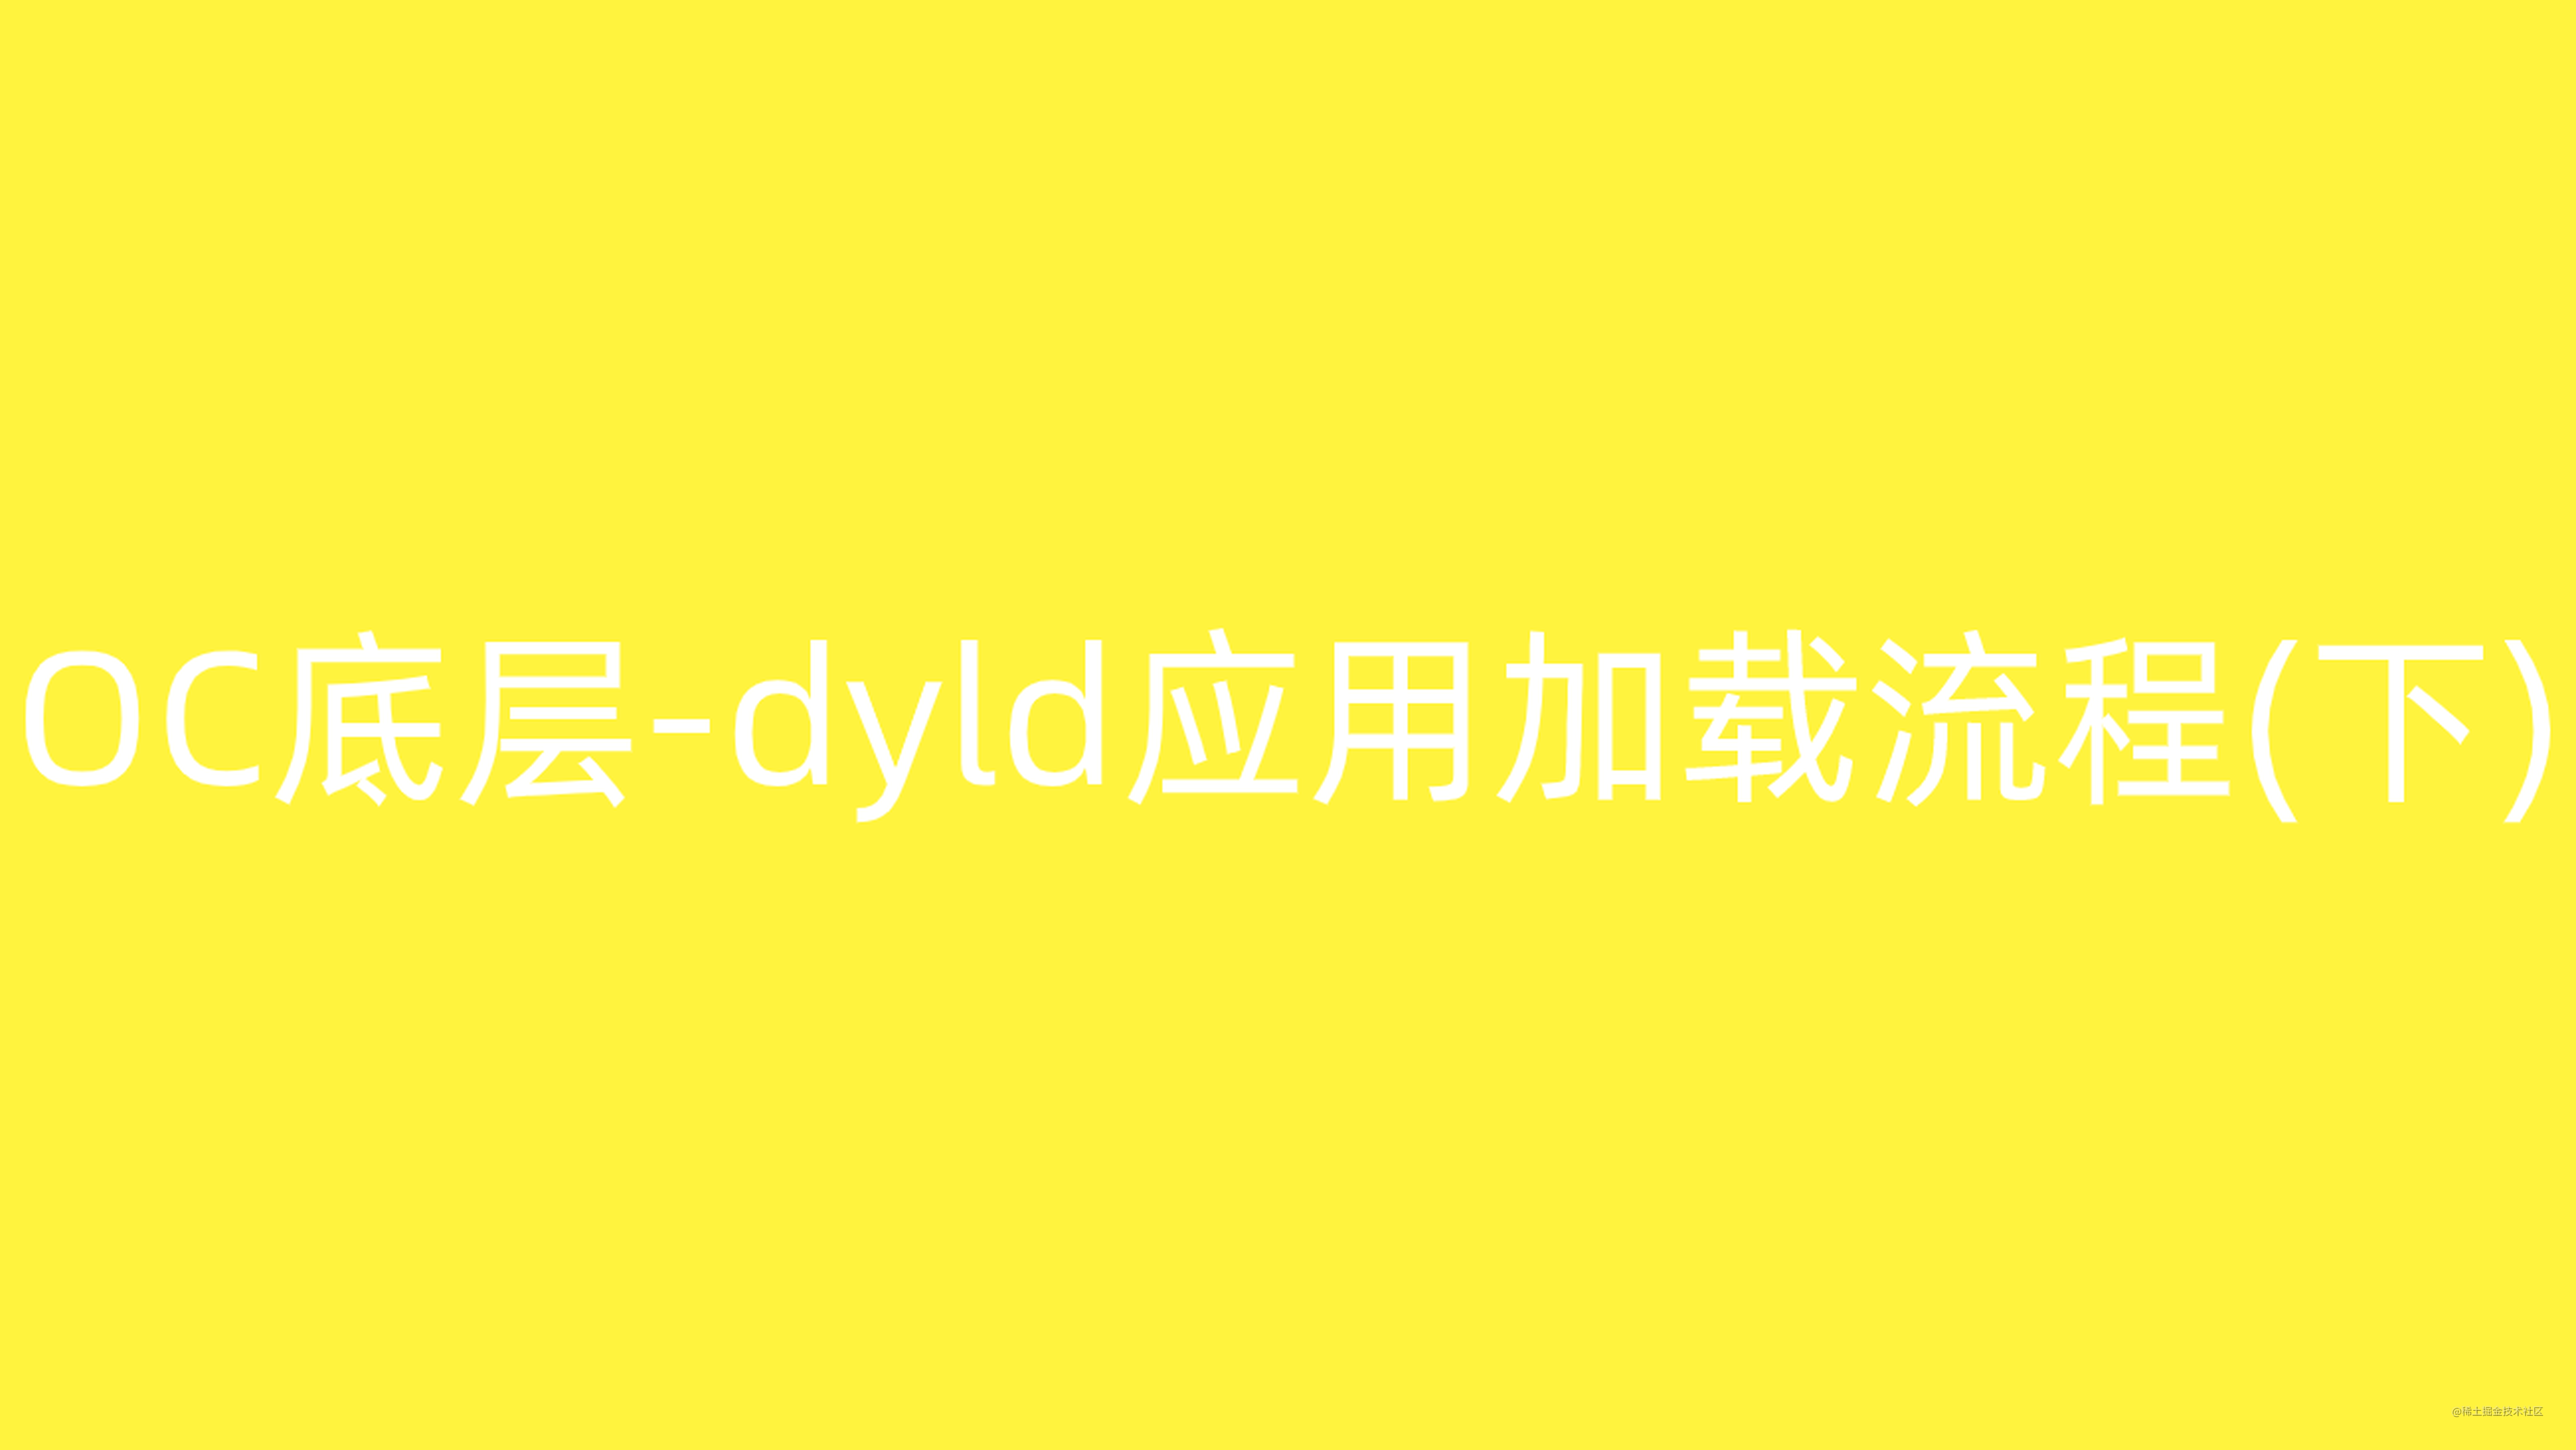 OC底层-dyld应用加载流程(下)